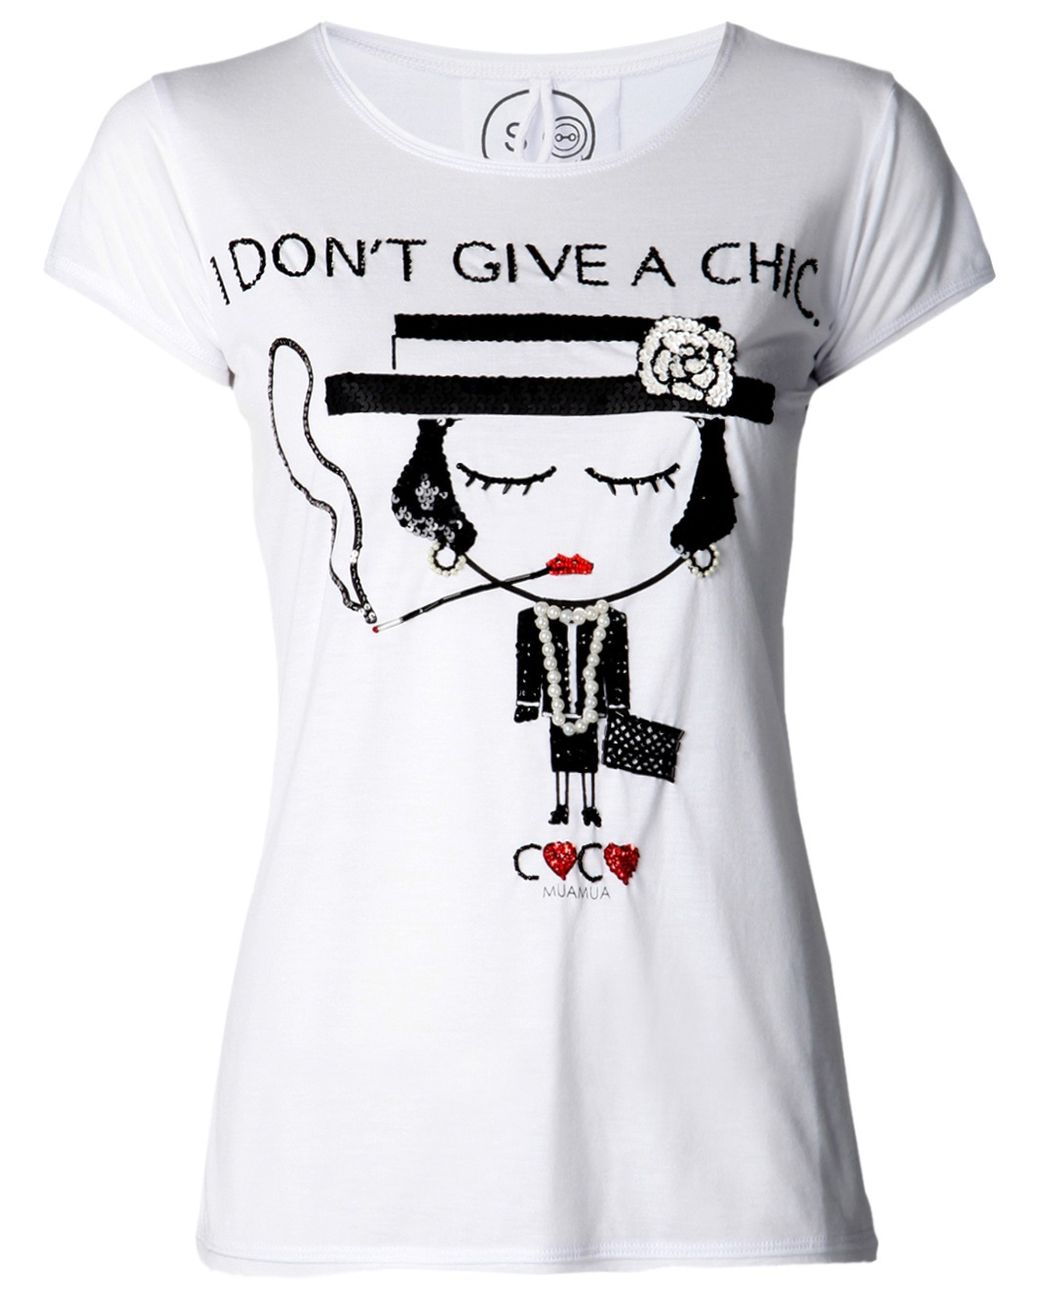 Enjoy Coco-Chanel Parody Women's T-Shirt XL / White